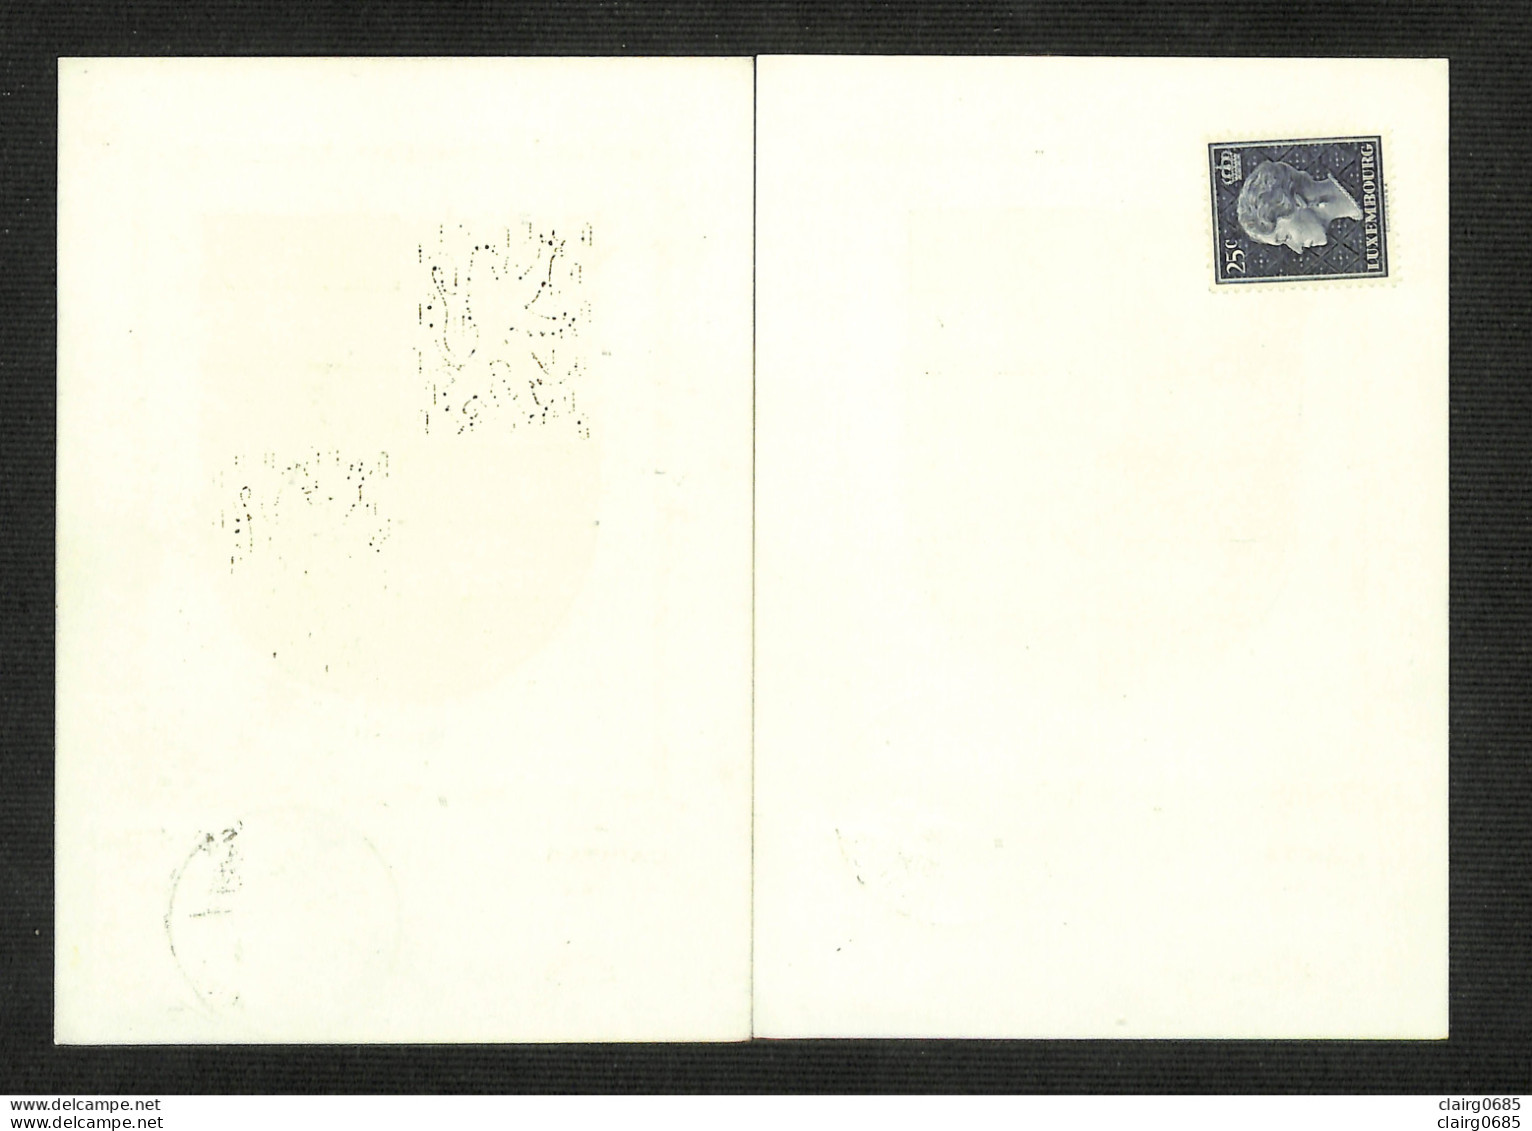 LUXEMBOURG - 2 Cartes MAXIMUM 1958 - Armoiries - VIANDEN - MERSCH - Tarjetas Máxima